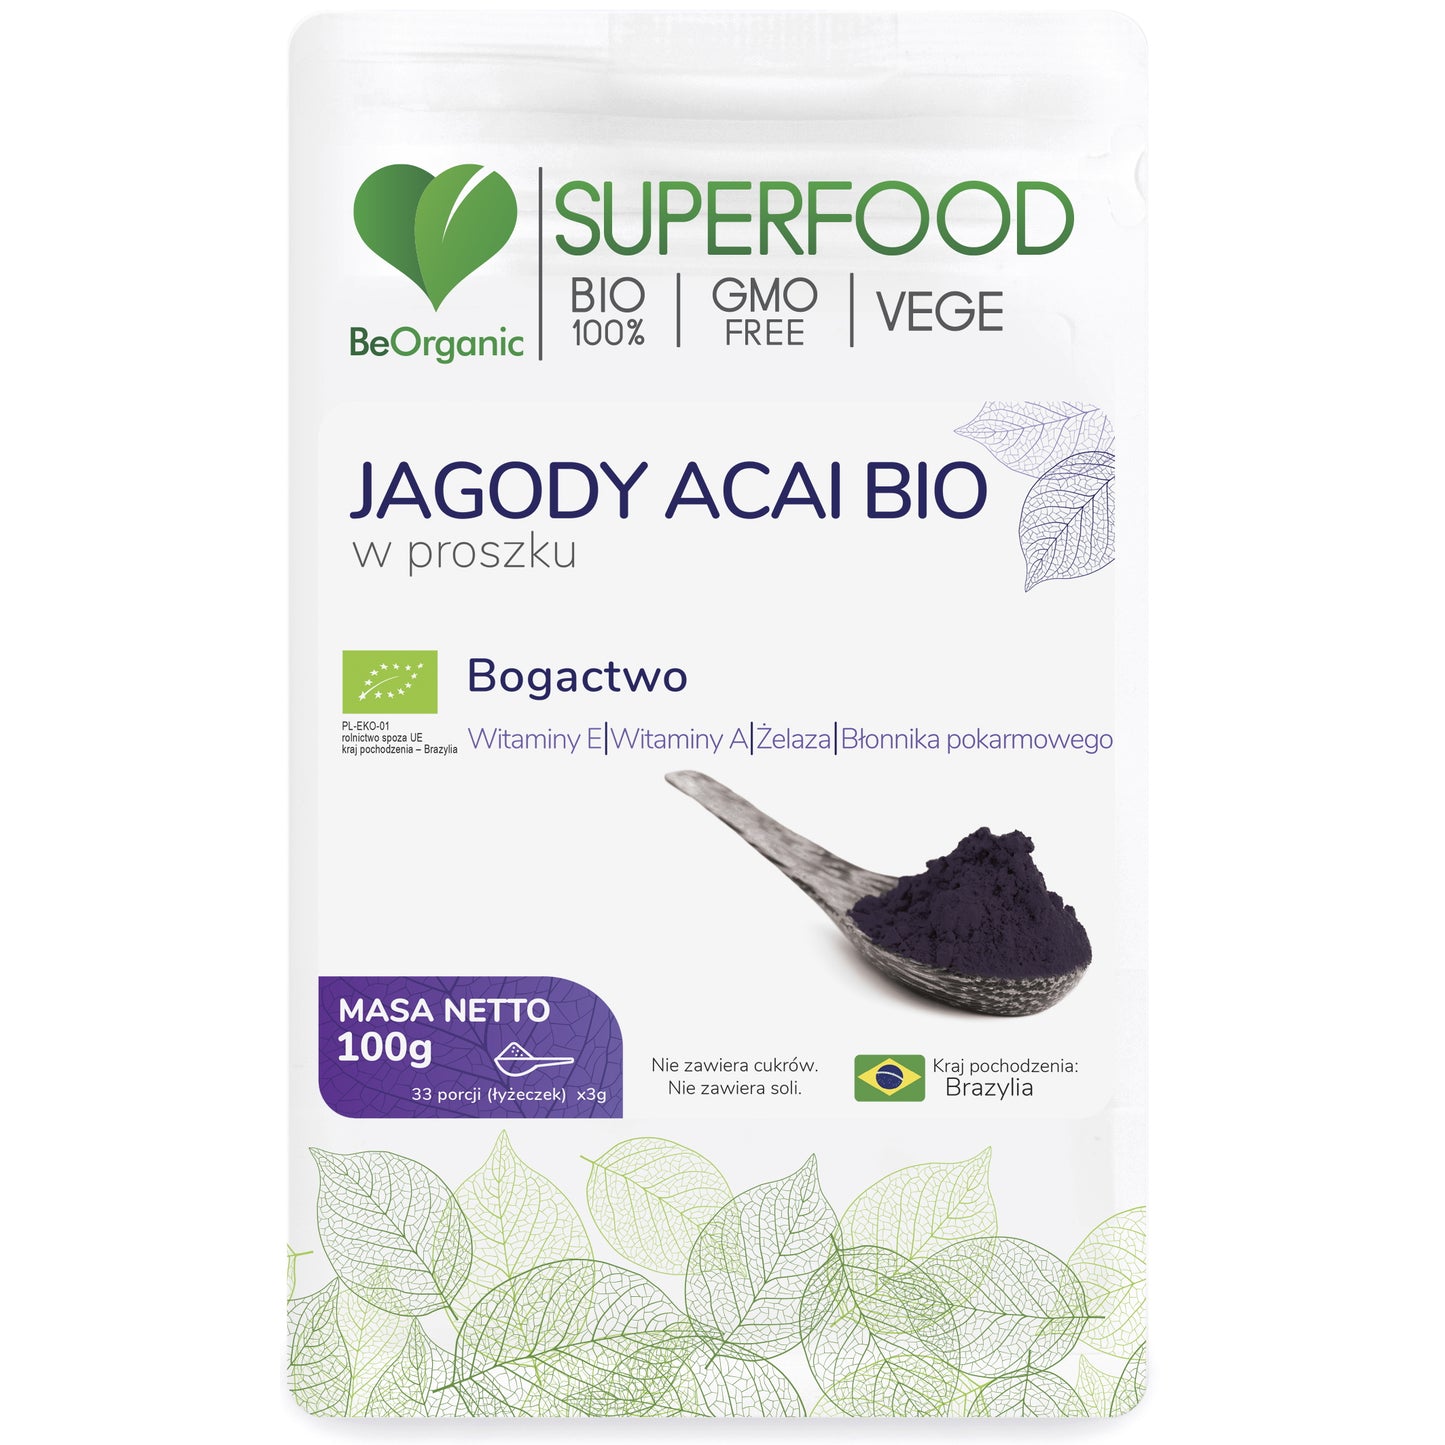 BeOrganic Acai Berries powder, 100g